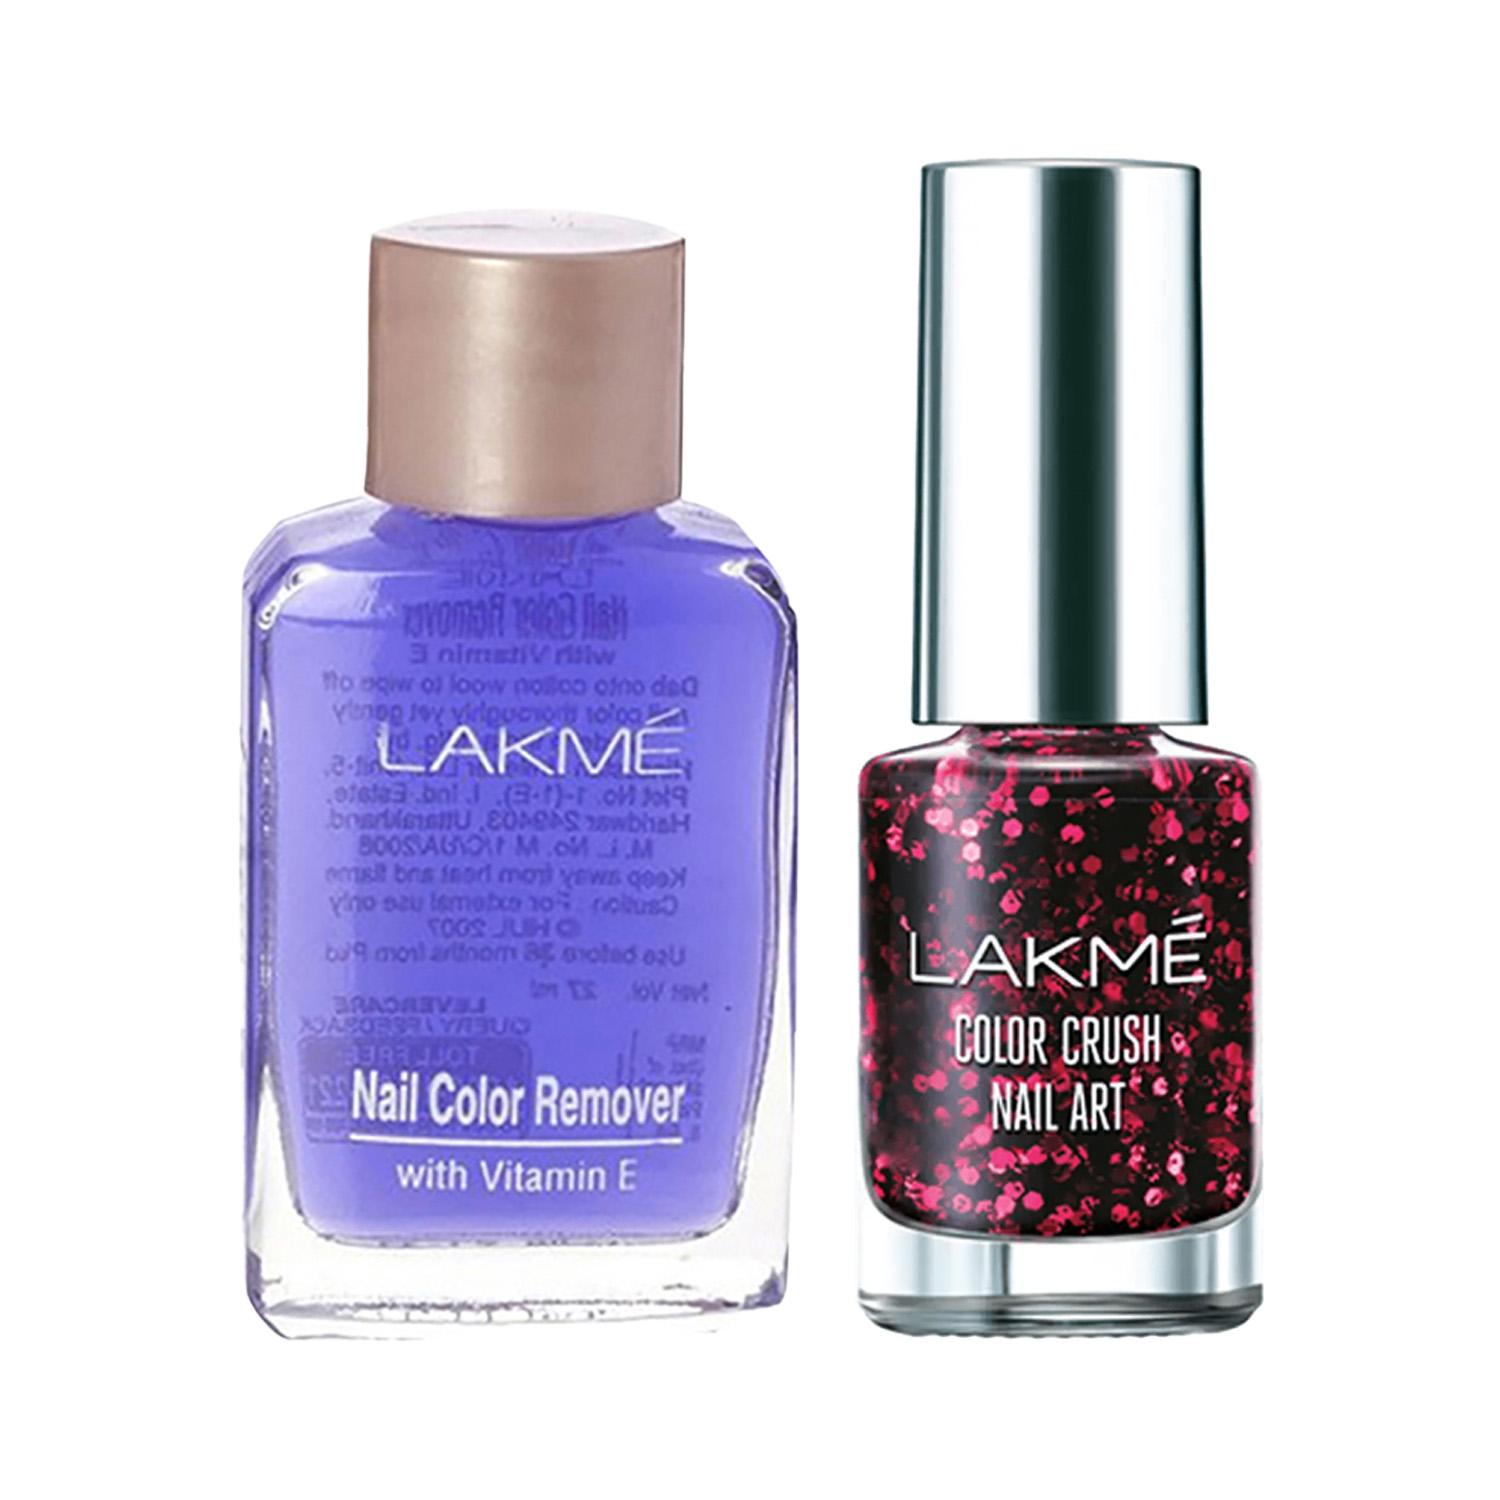 Lakme | Lakme Color Crush Nail Art - G4 + Nail Polish Remover Combo